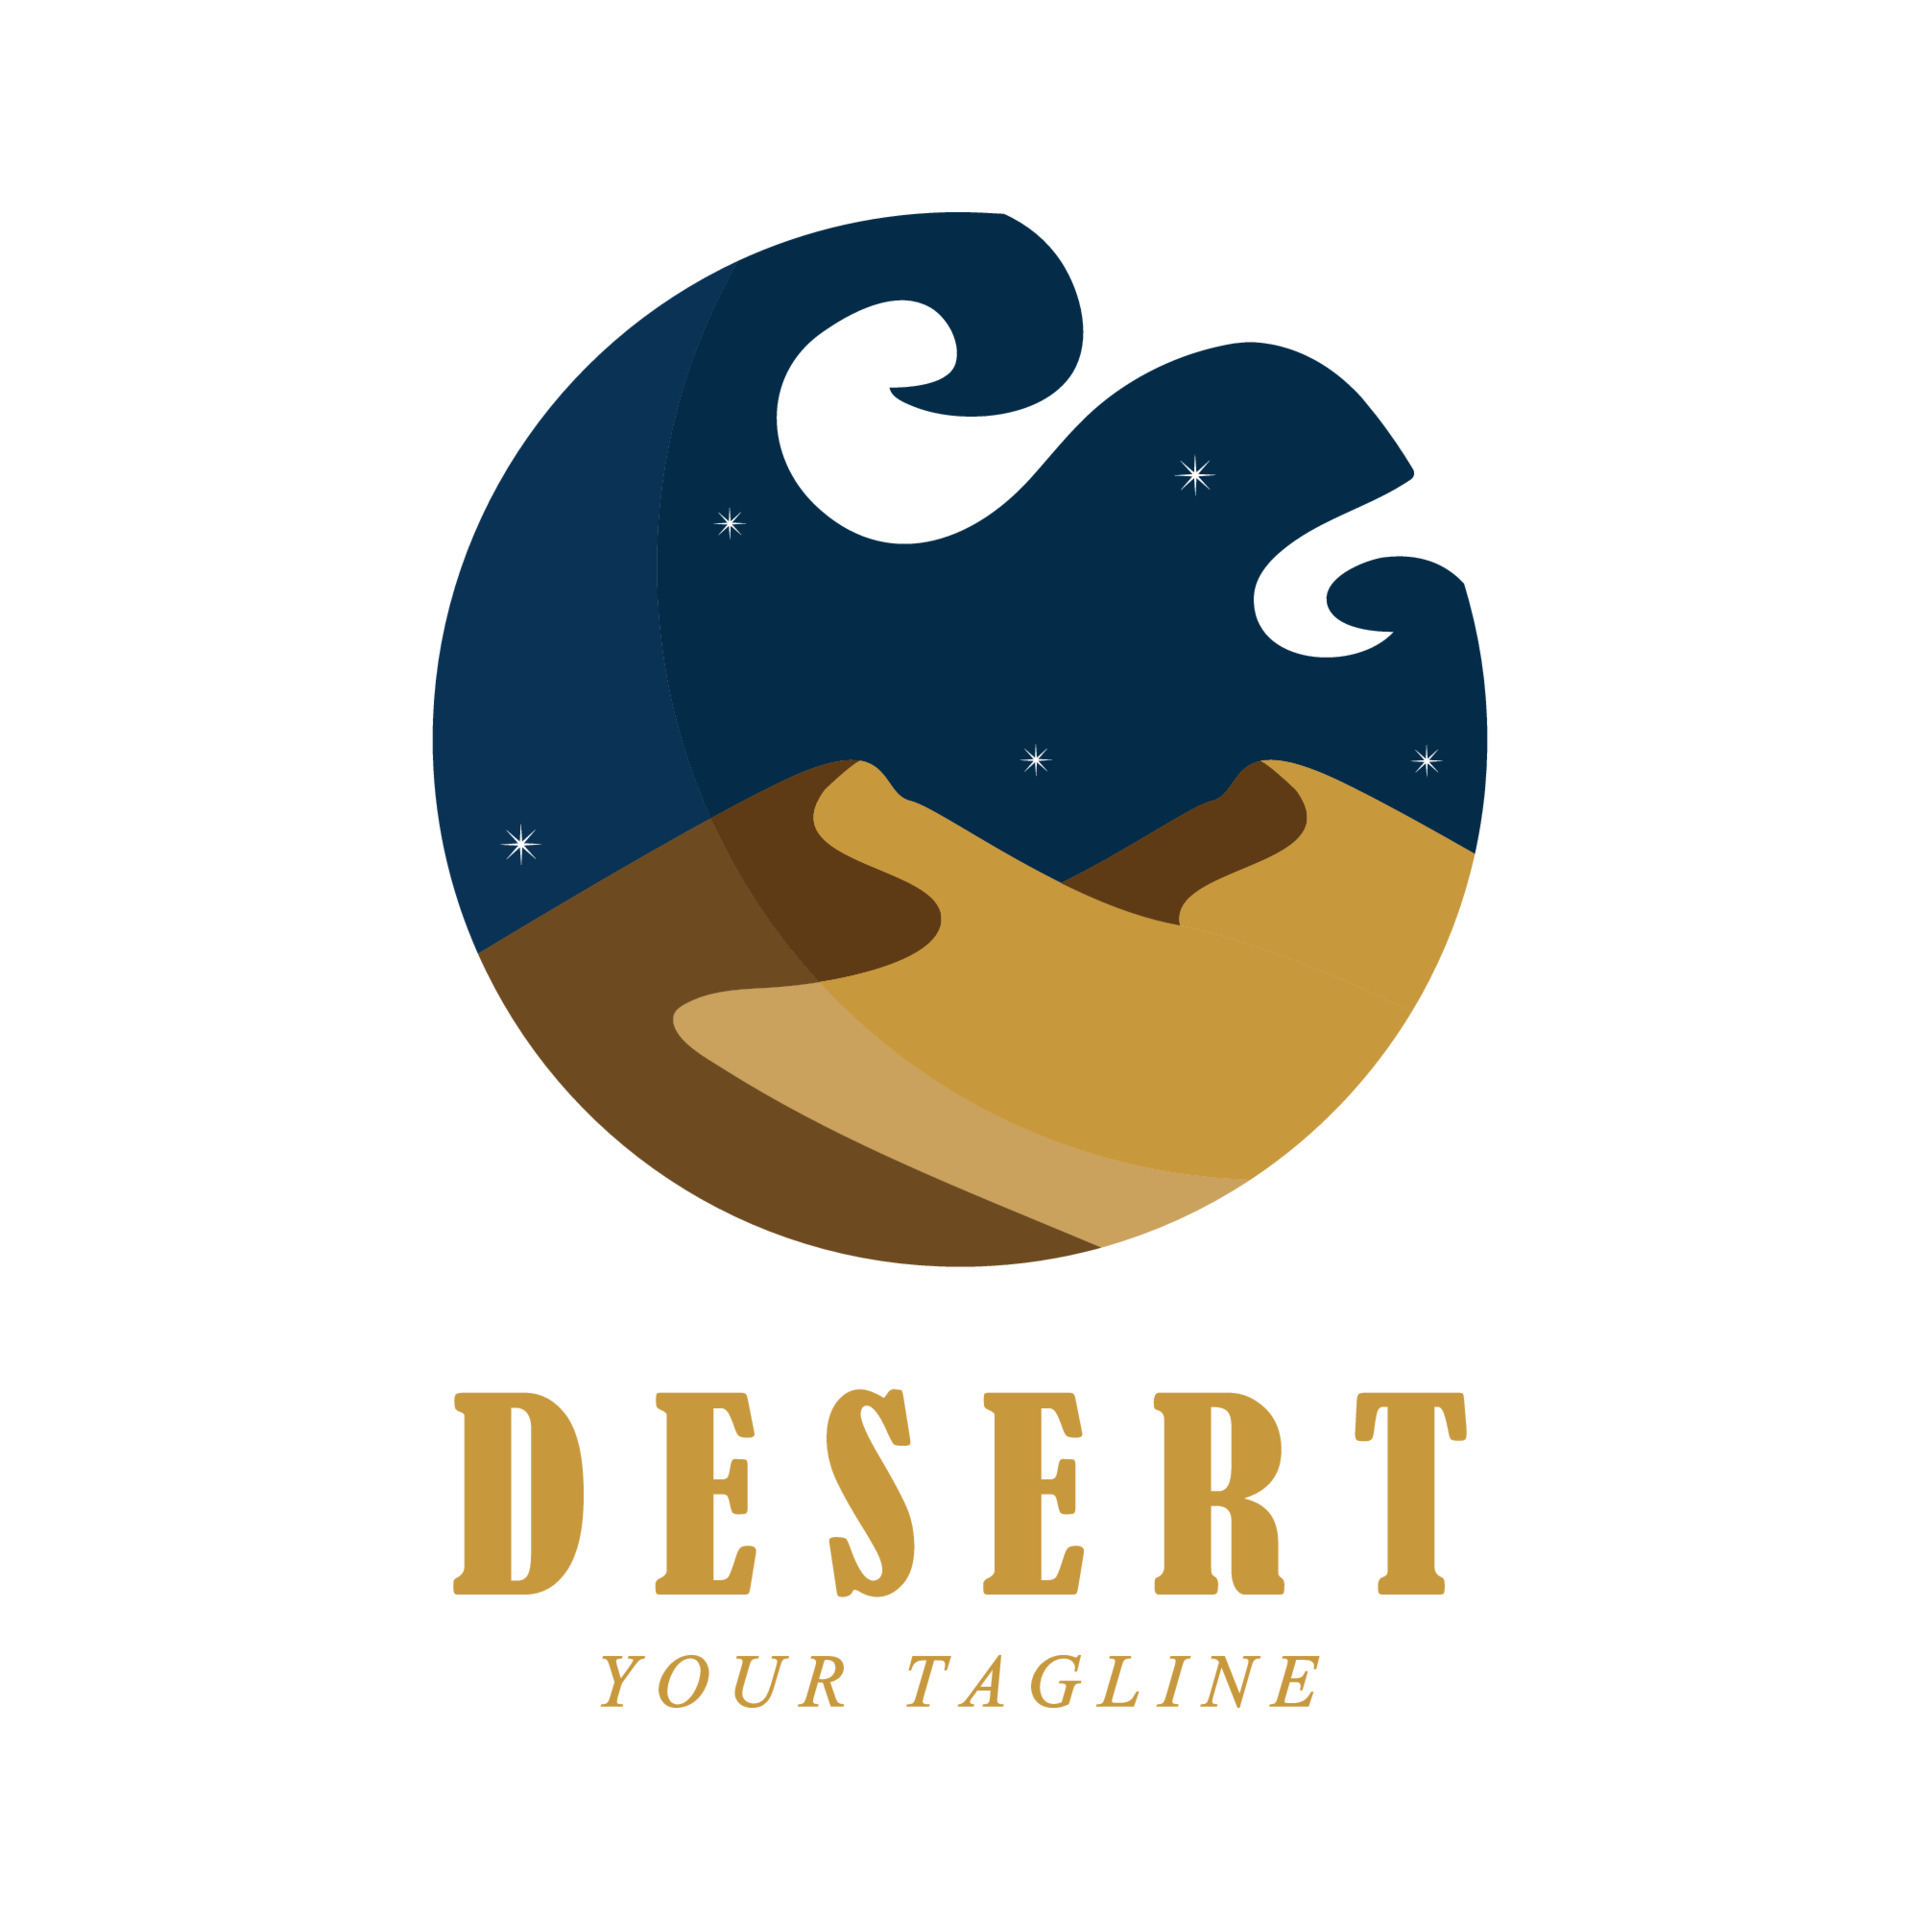 desert logo ideas 5